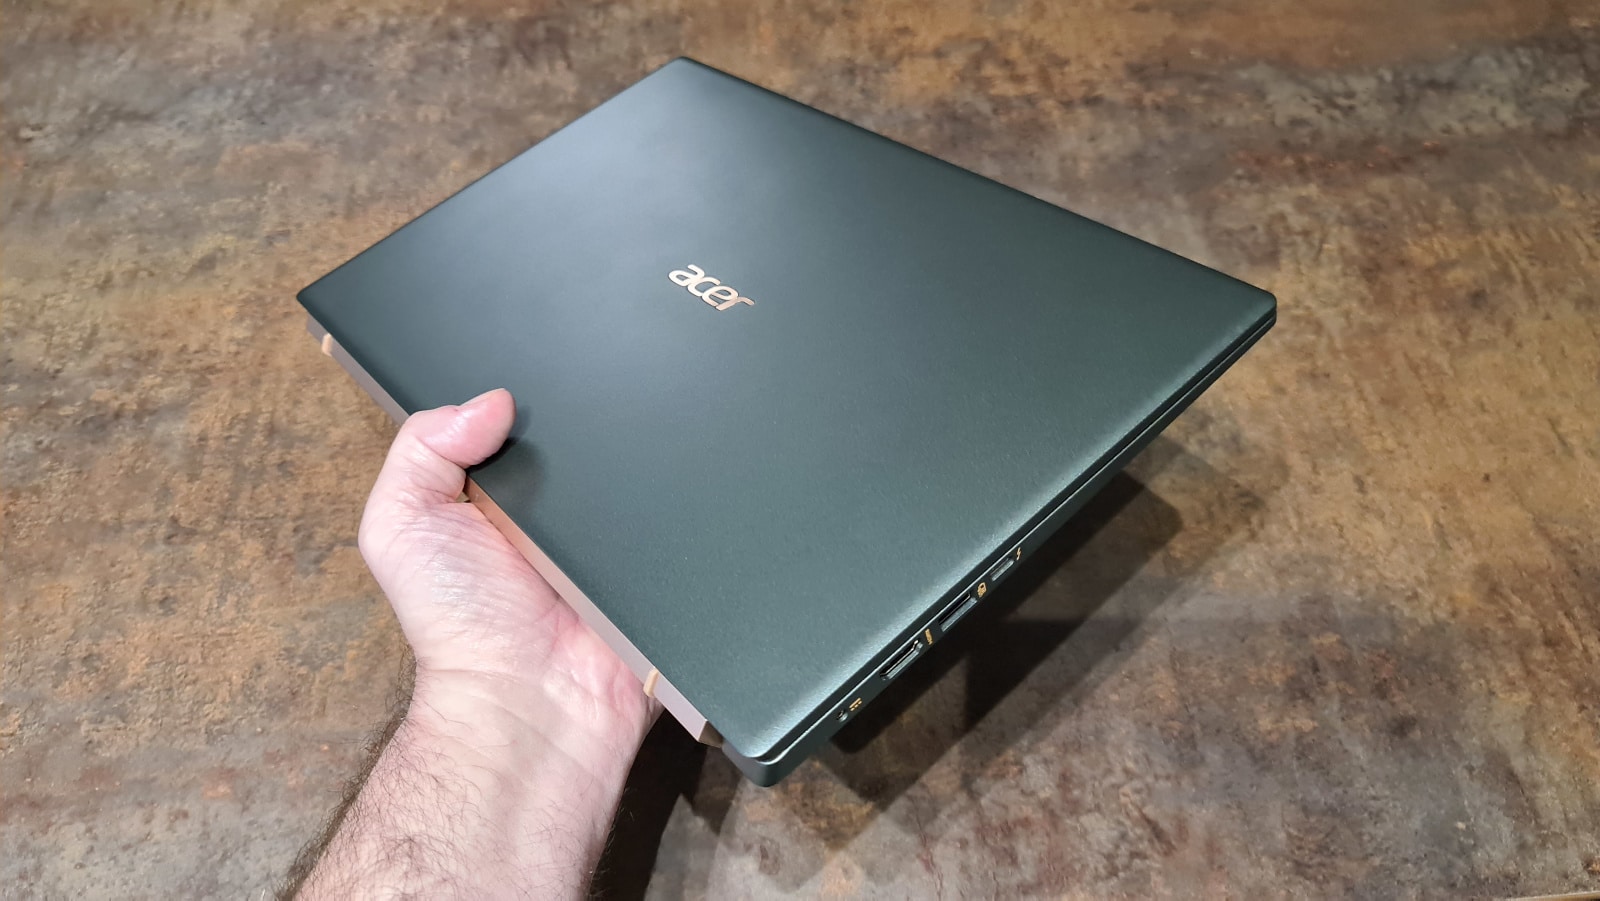 Acer lance un PC tout-en-un avec écran tactile 27 pouces